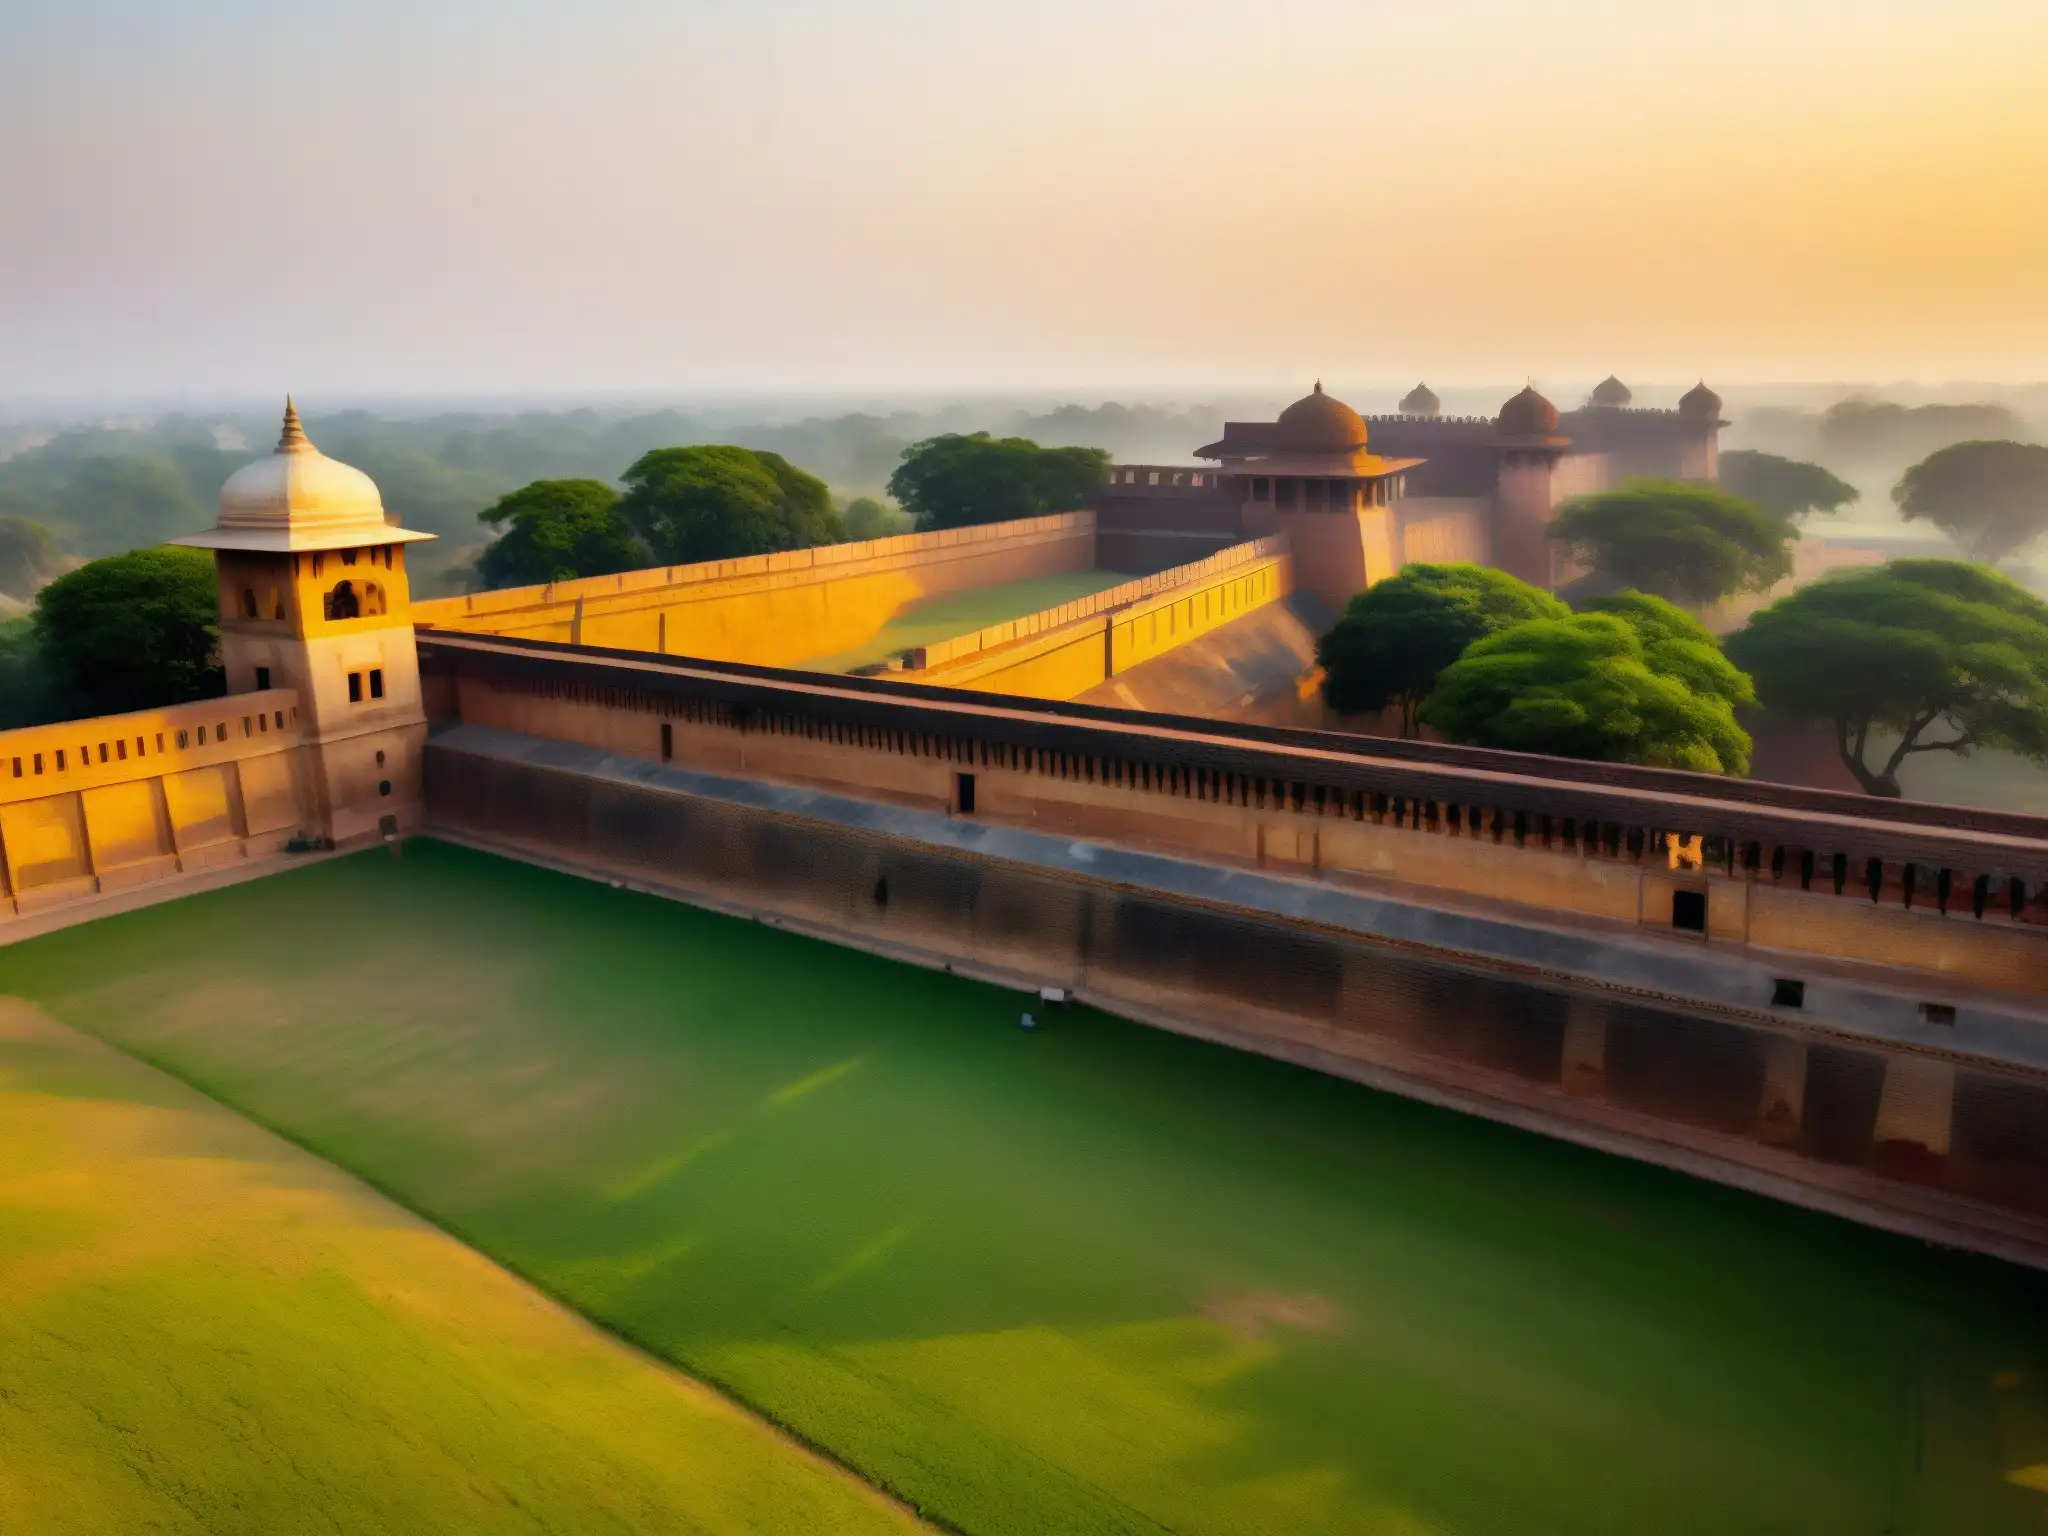 El imponente Fuerte de Meerut bañado por la luz dorada del atardecer, con sus antiguas murallas y torres